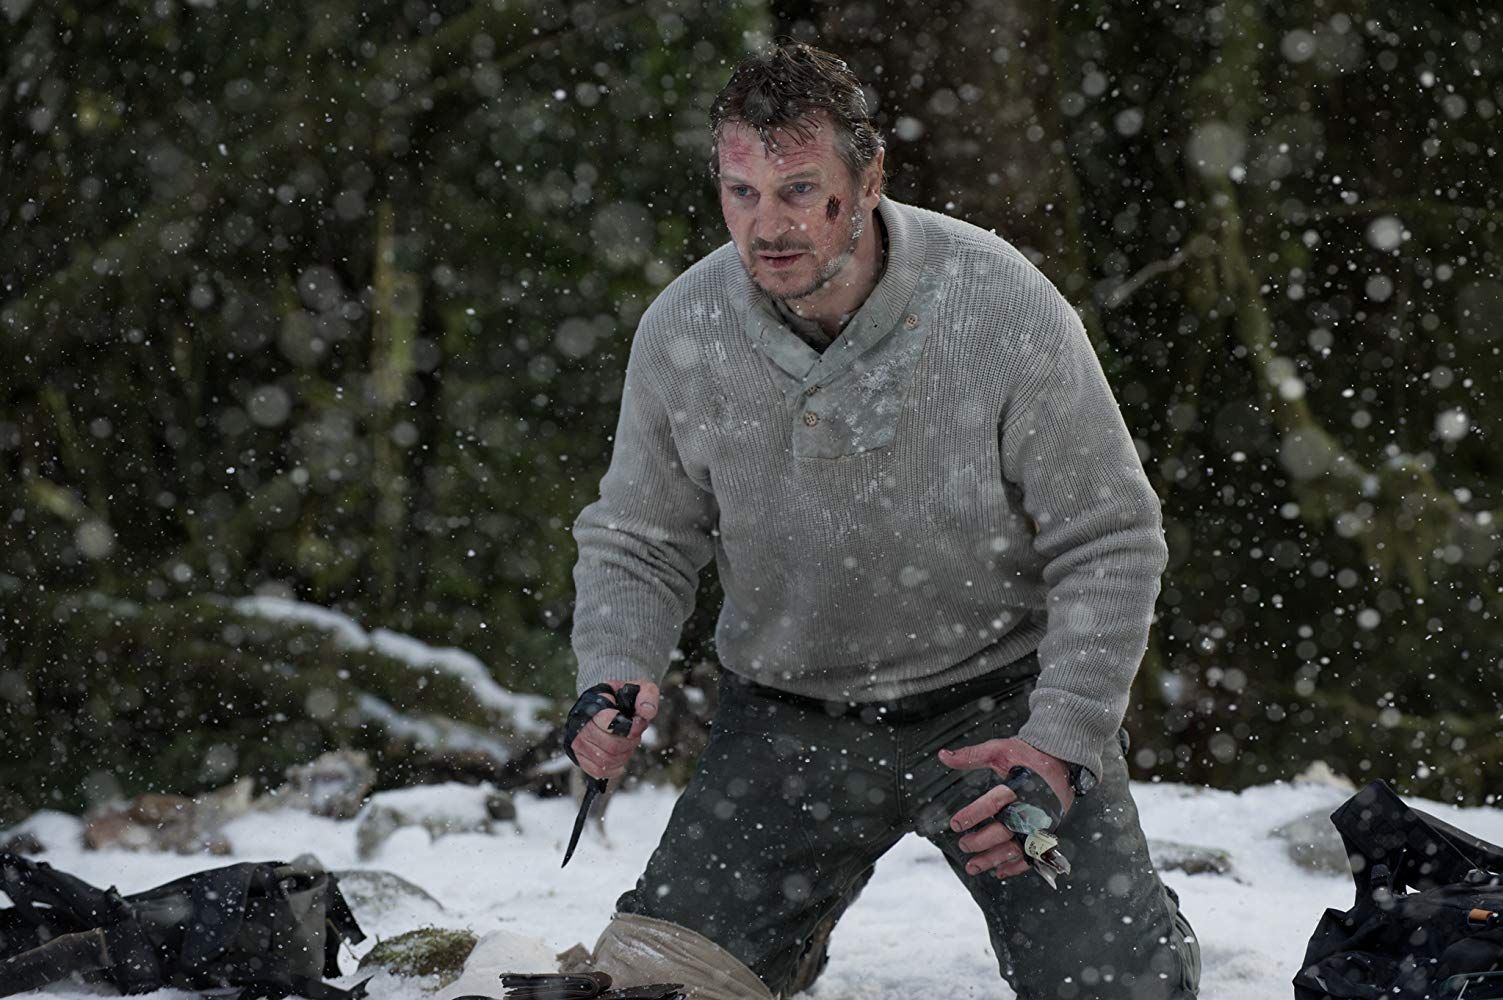 Cine en La 1: 'Infierno blanco', con Liam Neeson